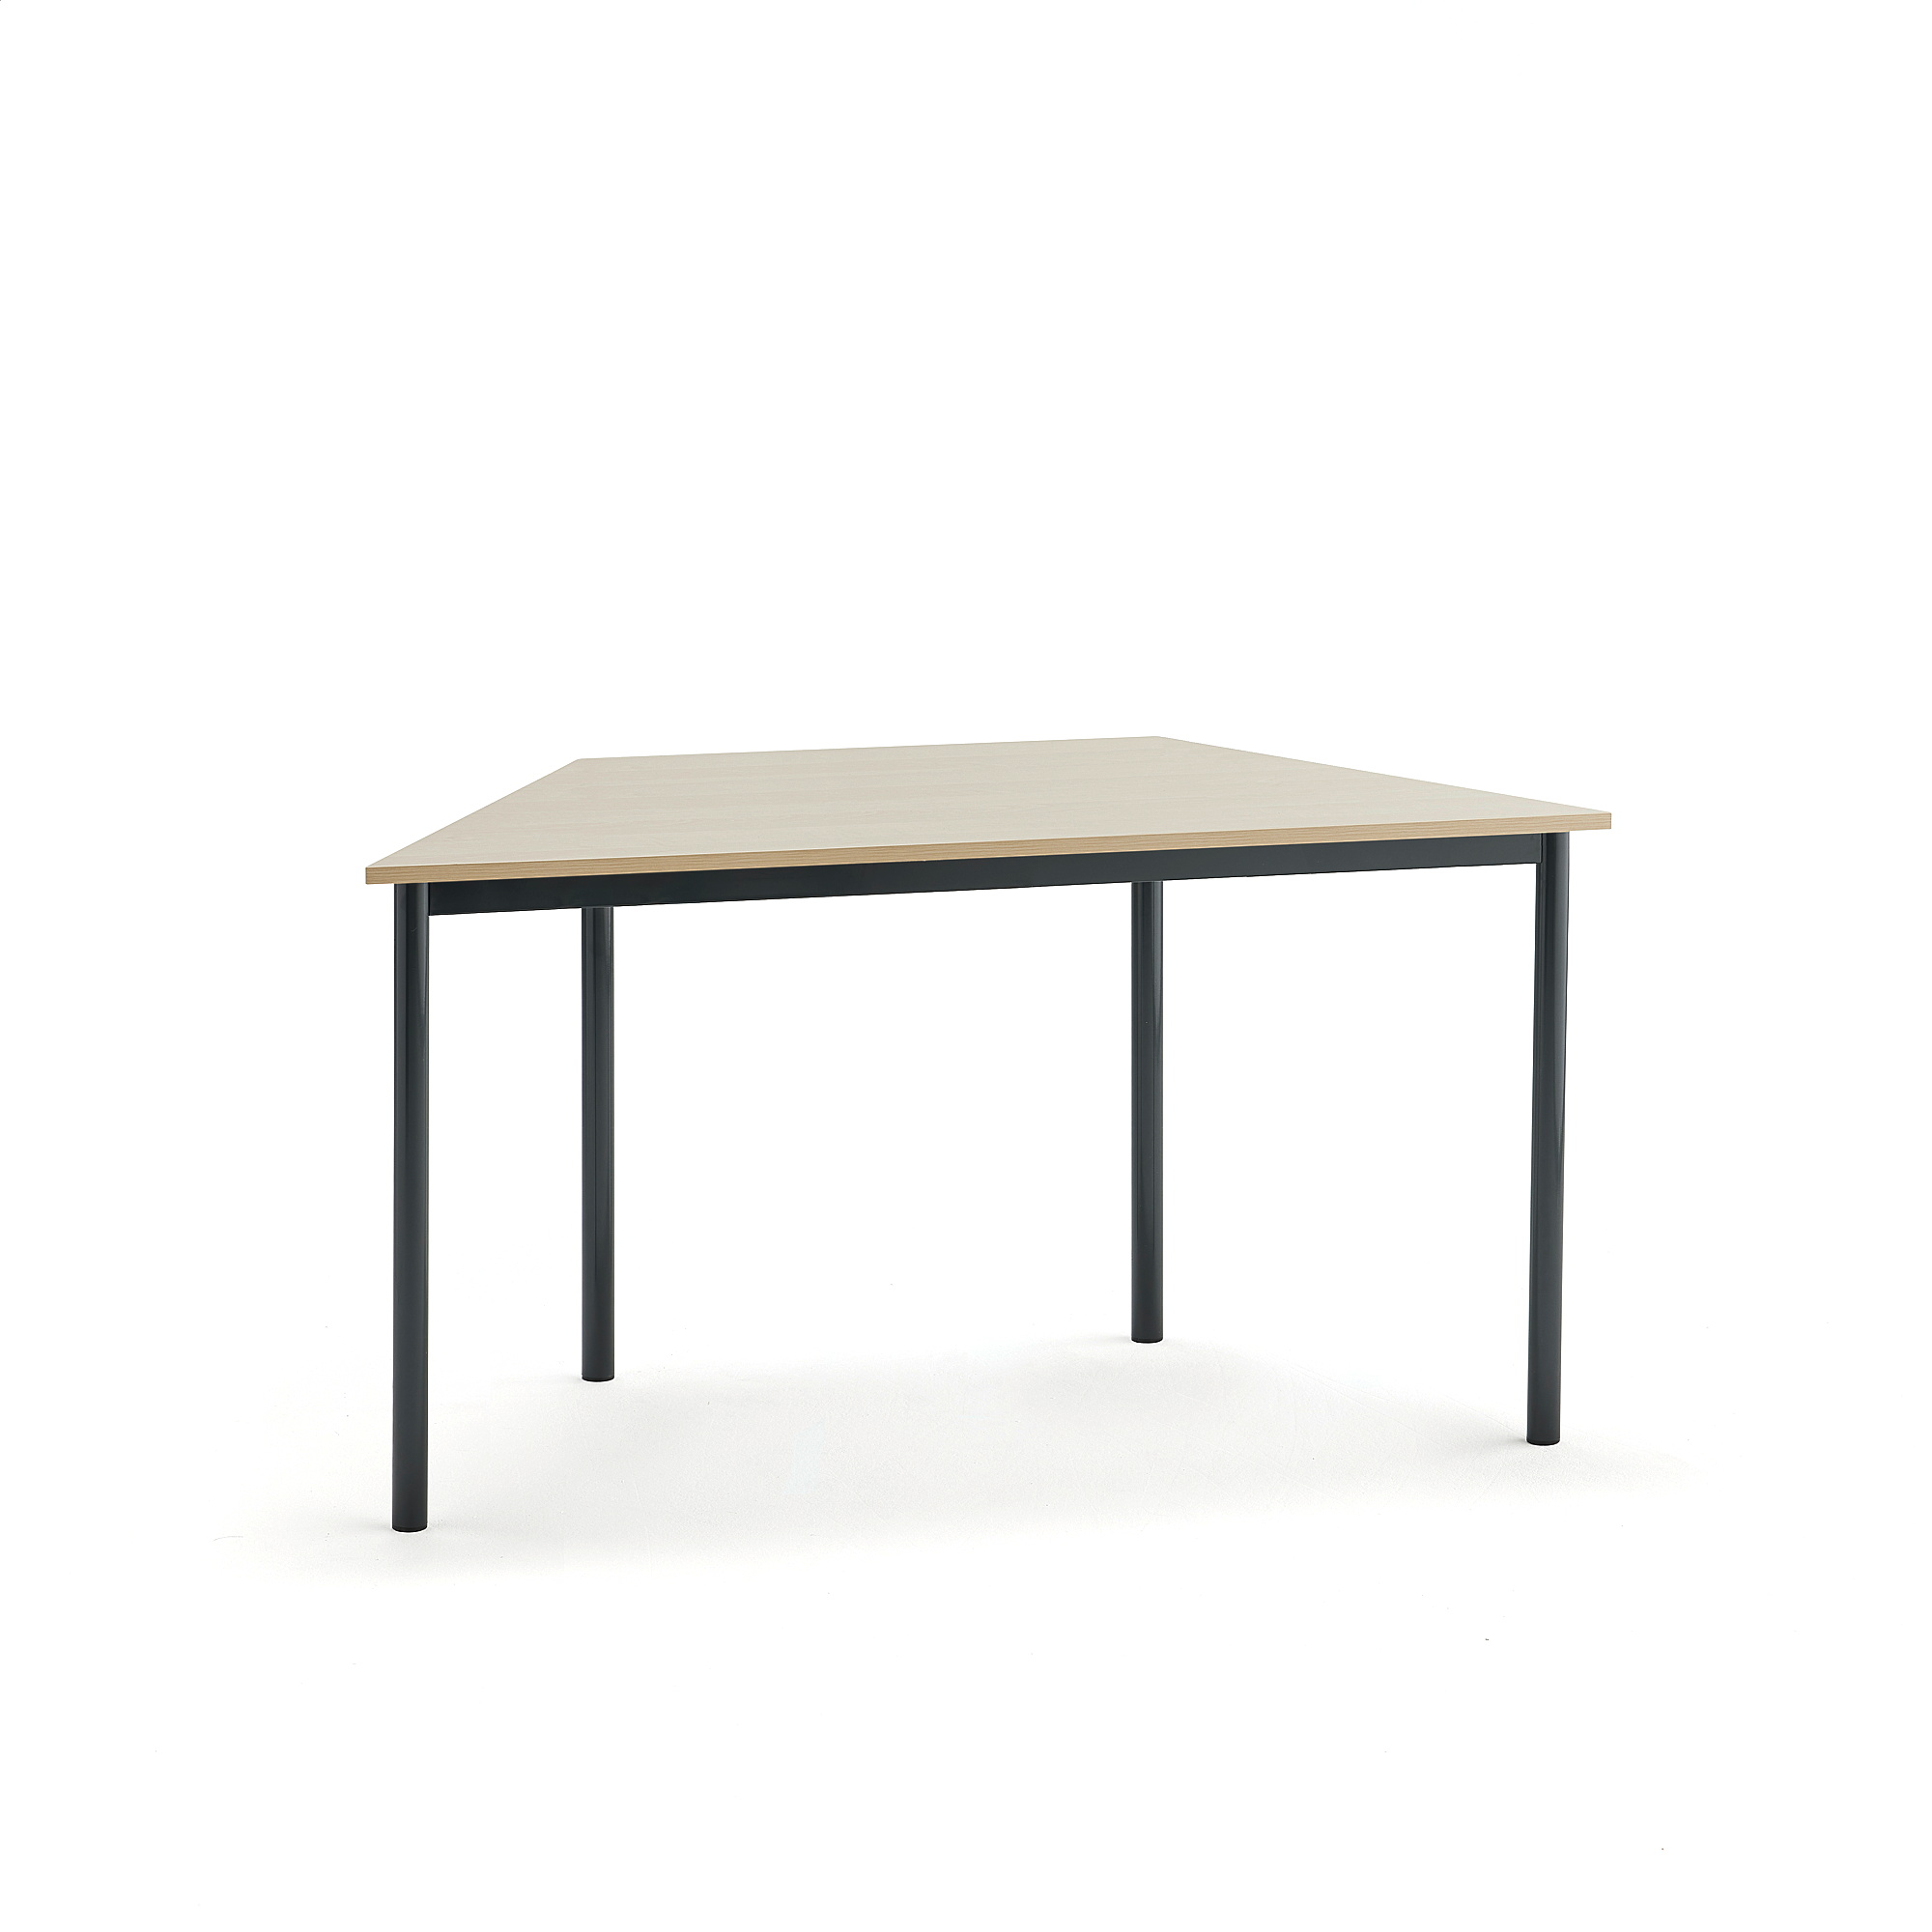 Stůl SONITUS TRAPETS, 1200x600x720 mm, antracitově šedé nohy, HPL deska tlumící hluk, bříza